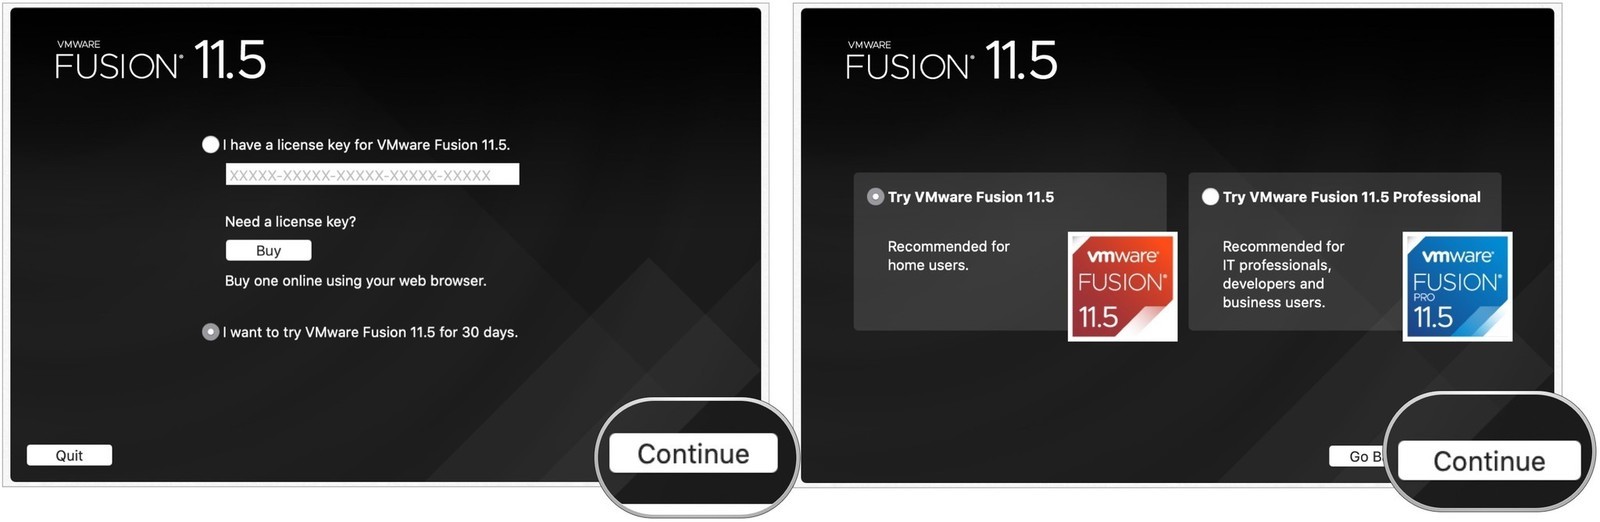 vmware fusion 10 for mac download reddit